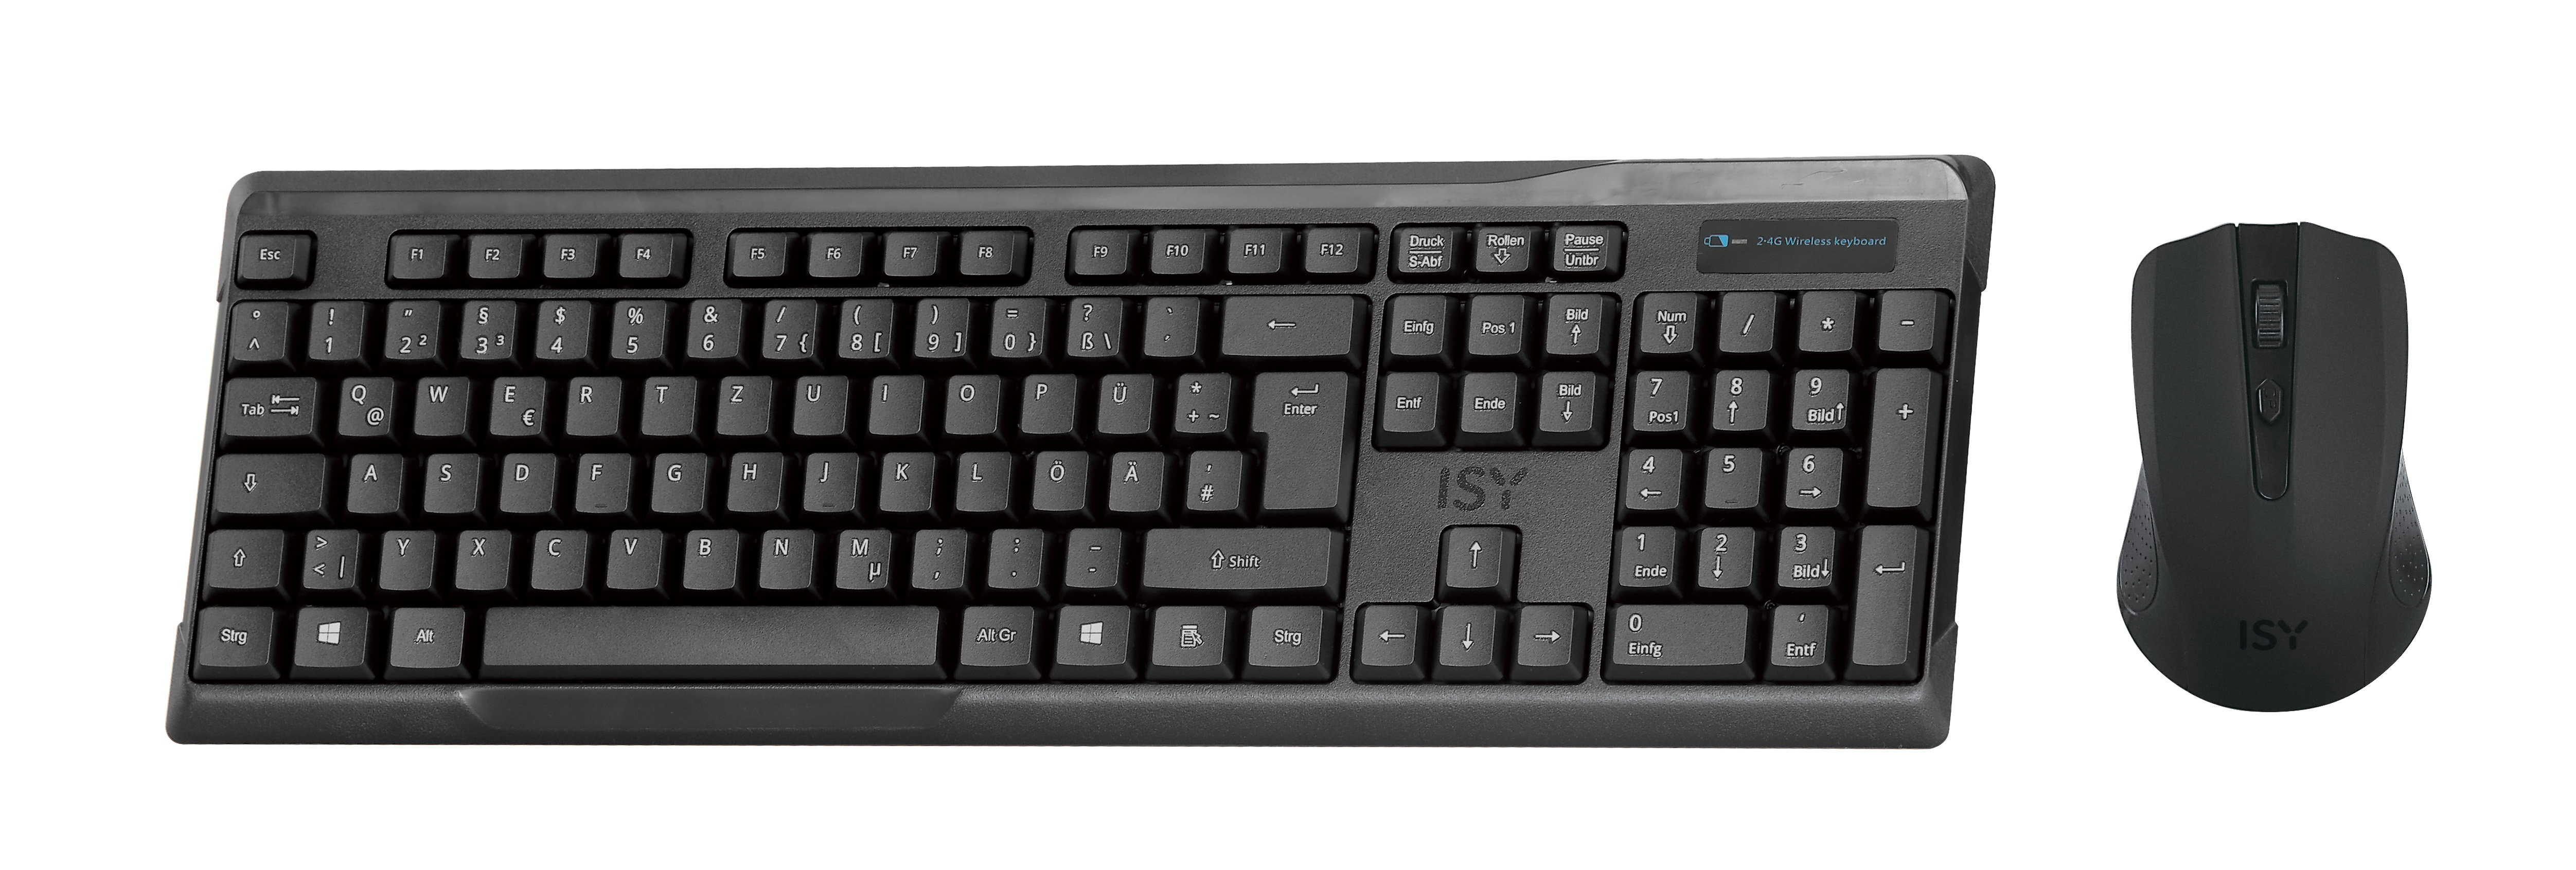 Tastatur & Schwarz Set, IDE-2500, ISY kabellos, Maus